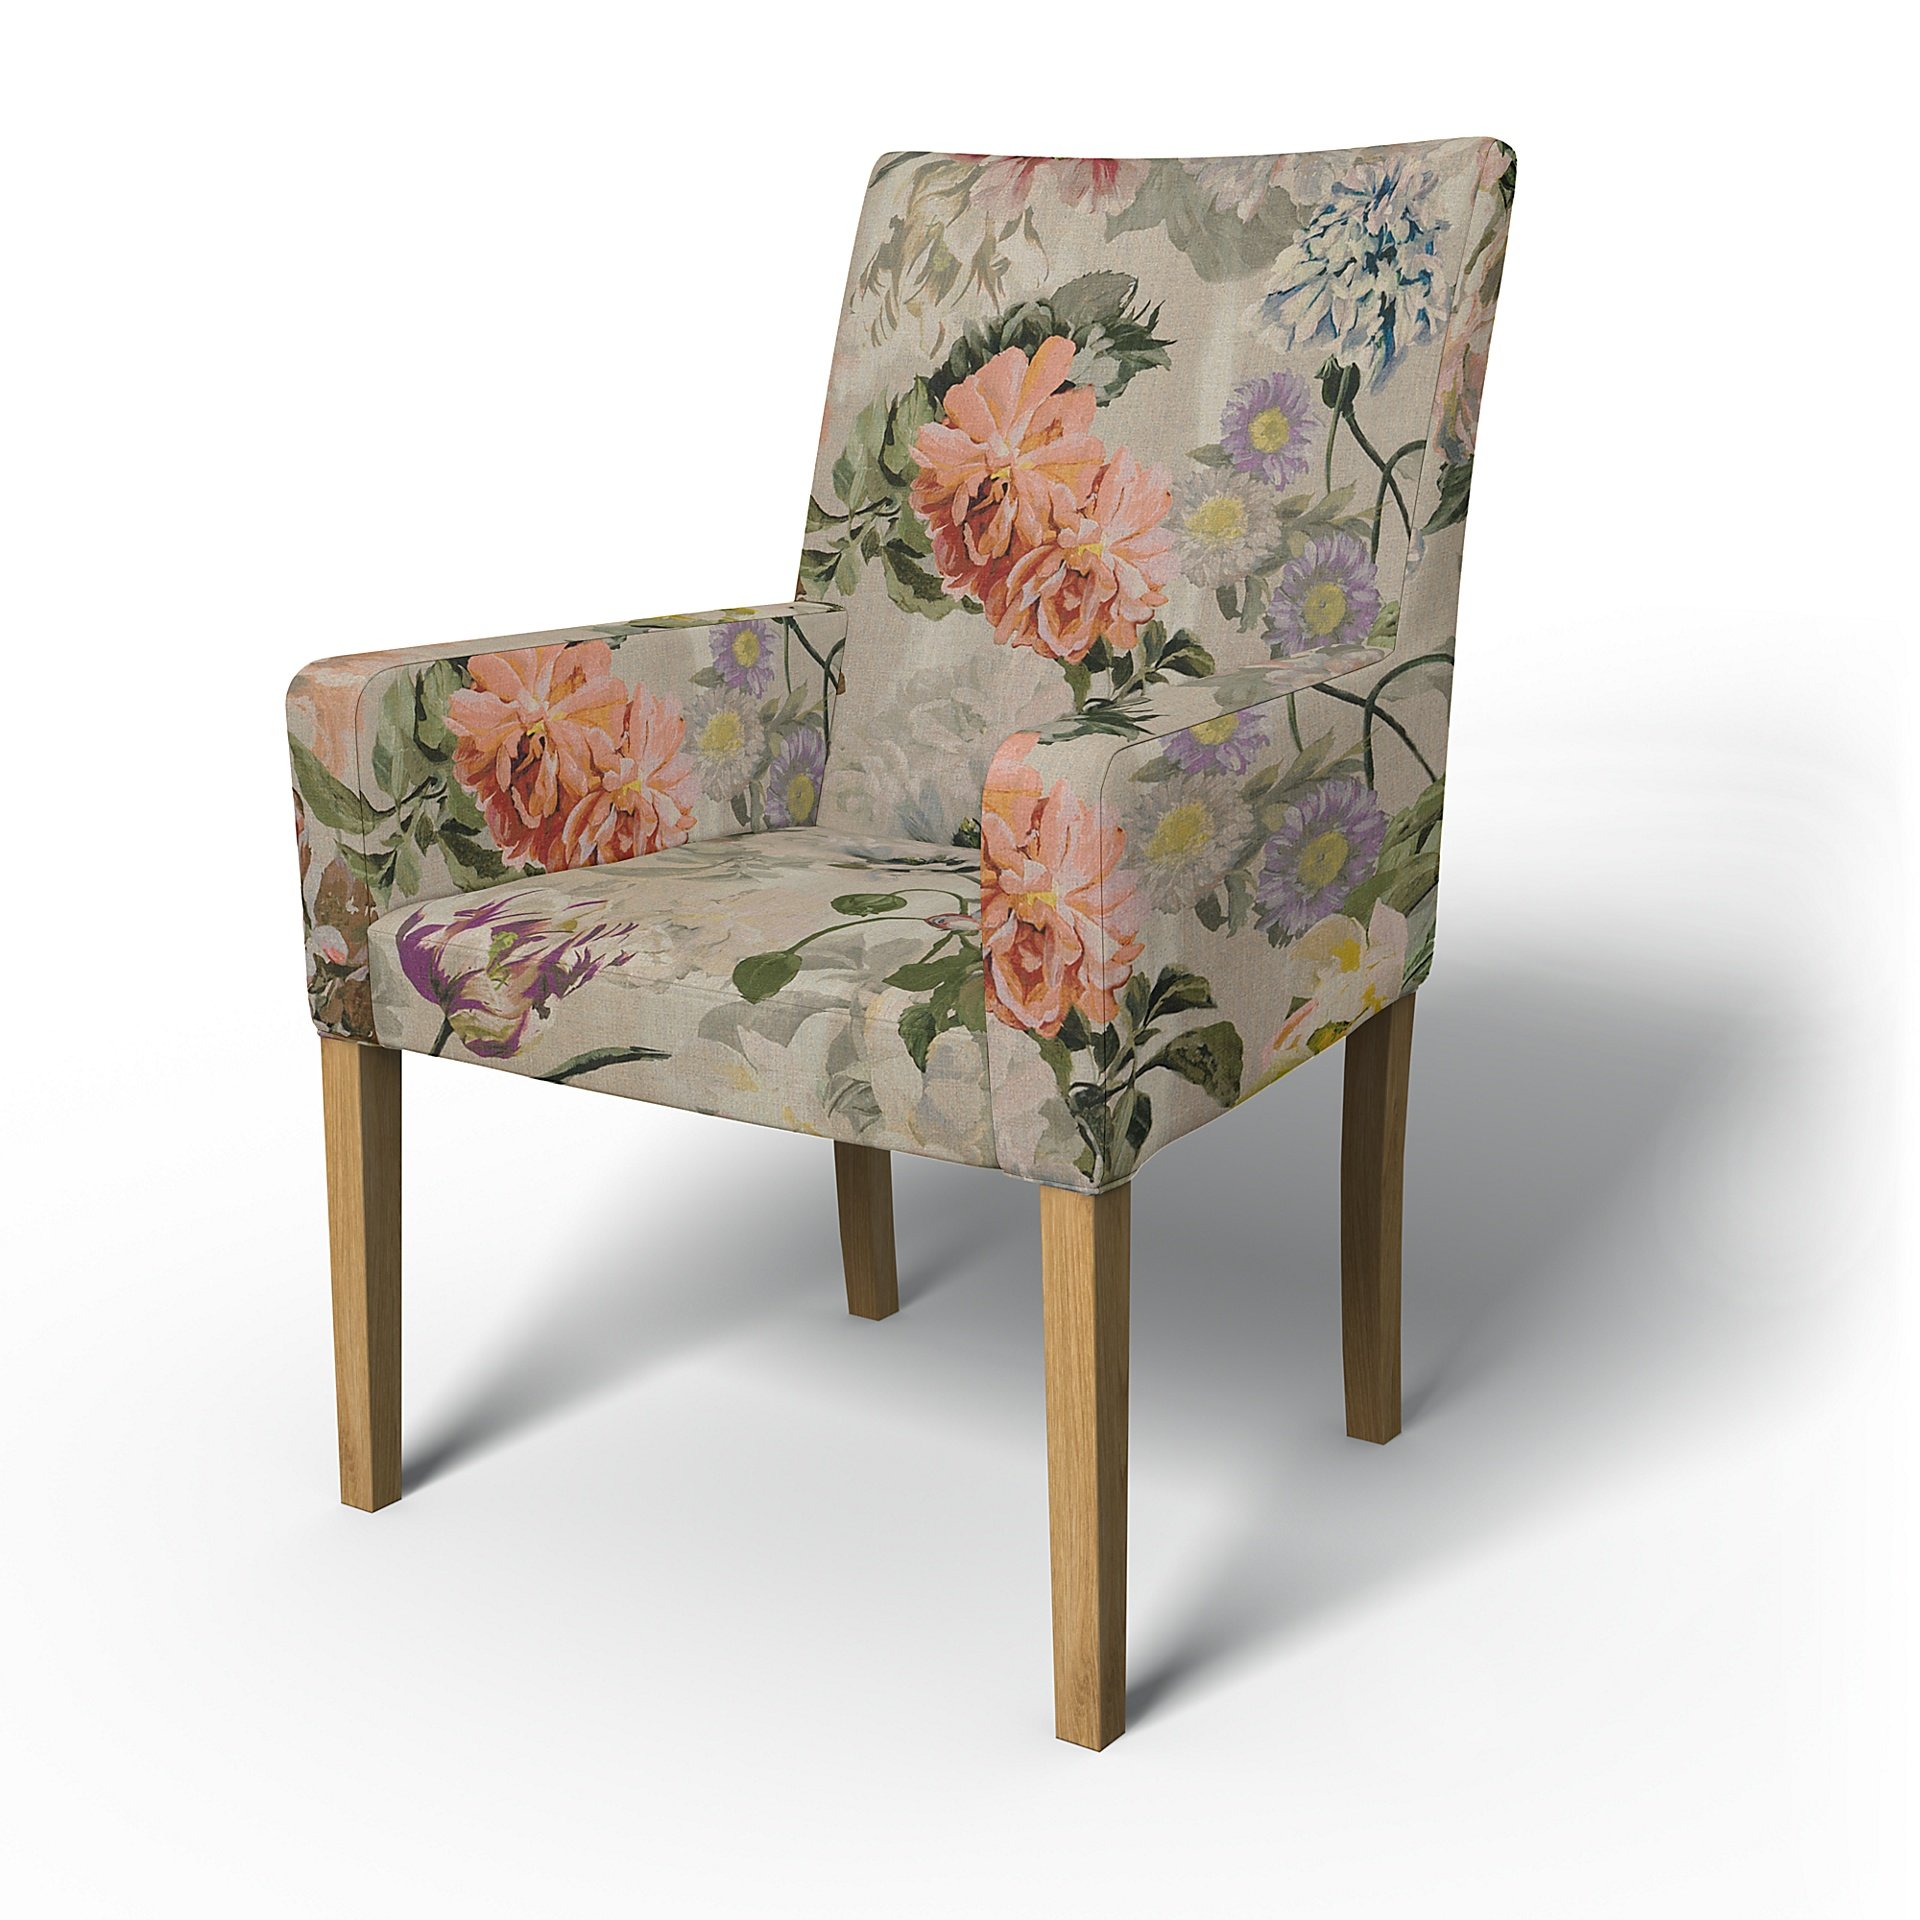 IKEA - Henriksdal, Chair cover w/ armrests, short, Delft Flower - Tuberose, Linen - Bemz